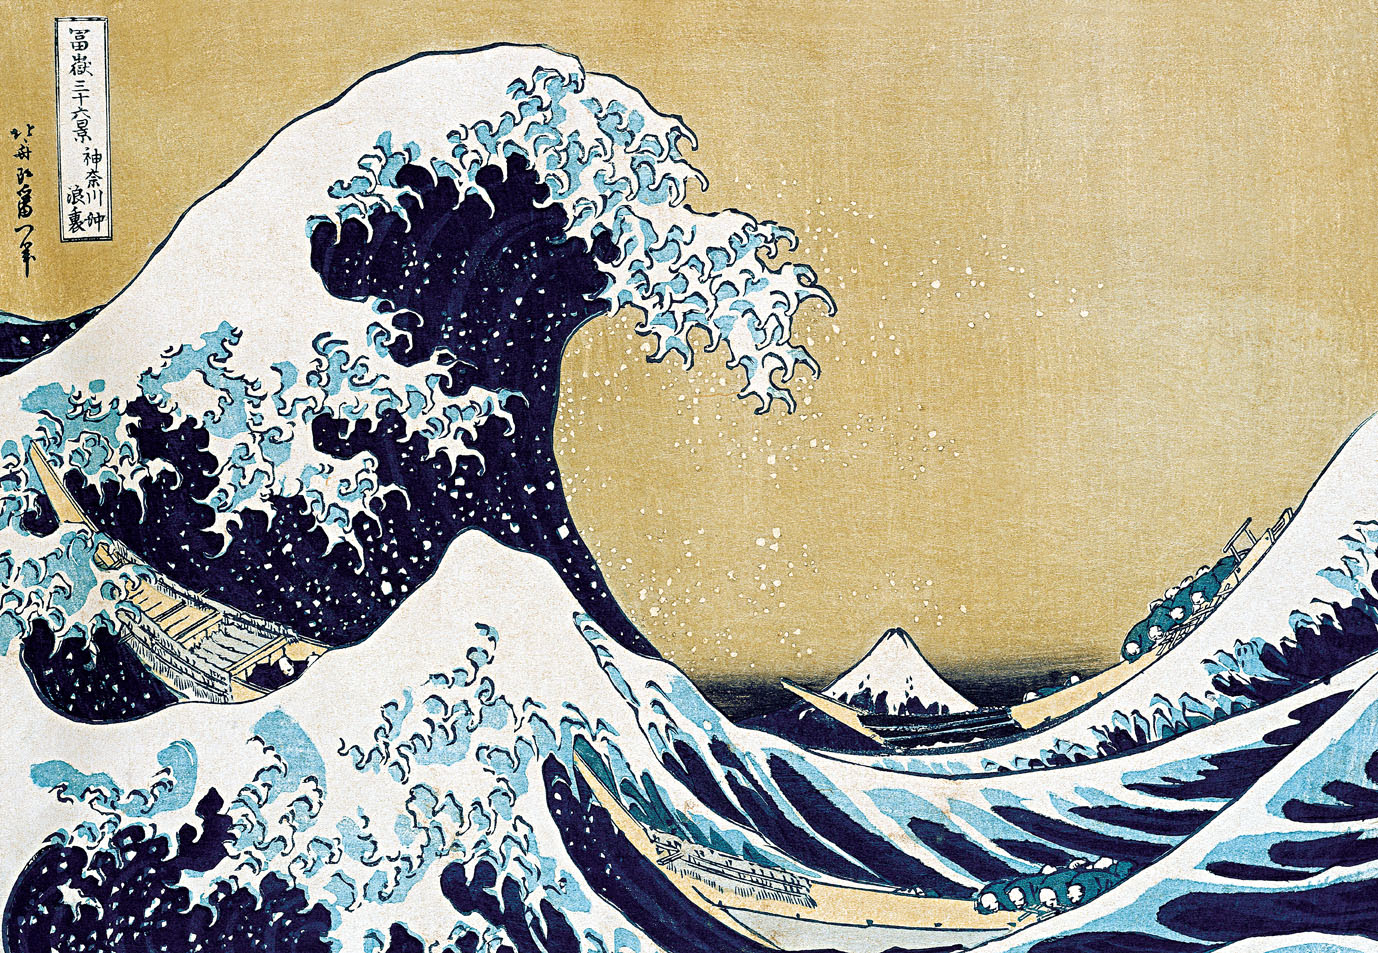 Katsushika-Hokusai 1830-1832